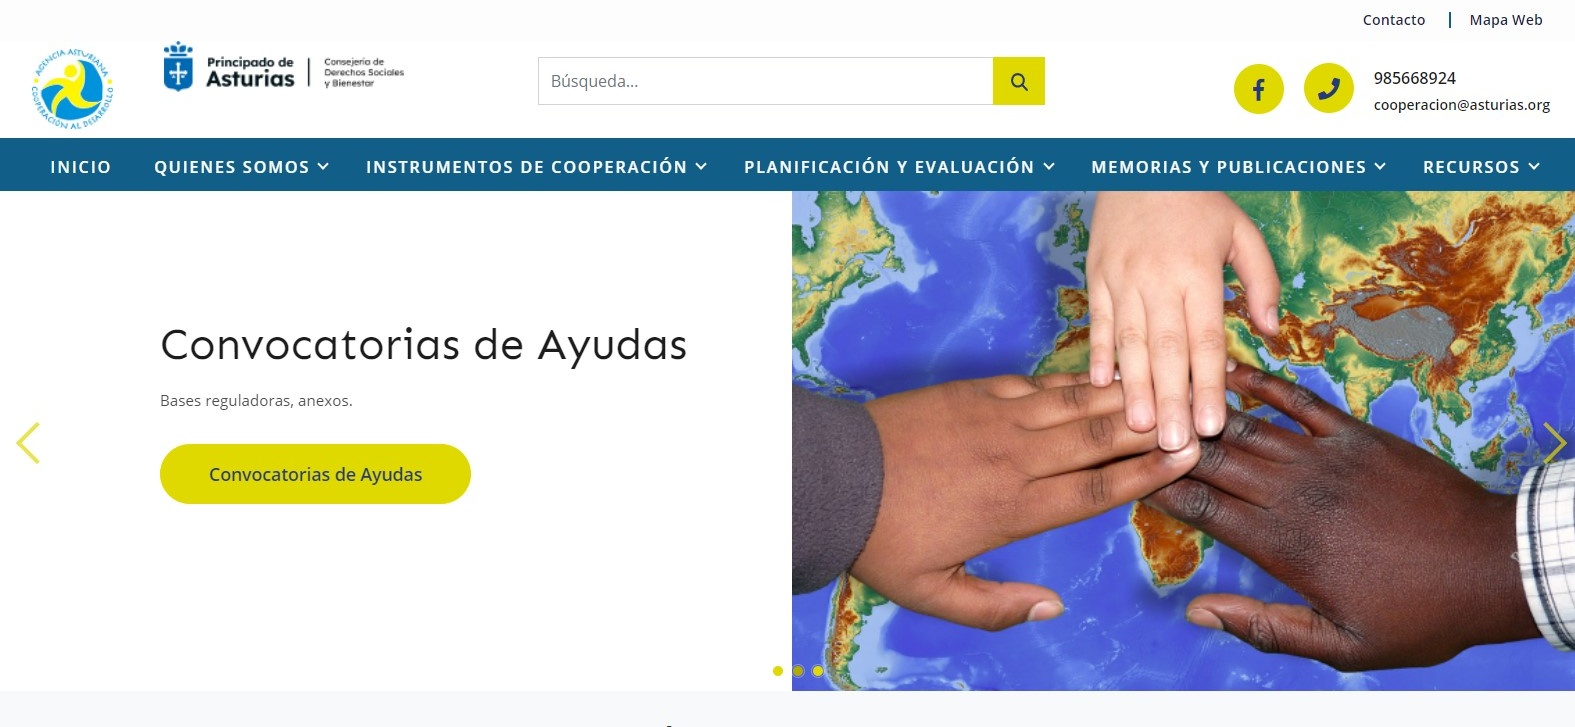 Imagen - El Gobierno de Asturias concede cerca de tres millones en ayudas a 31 proyectos de cooperación al desarrollo